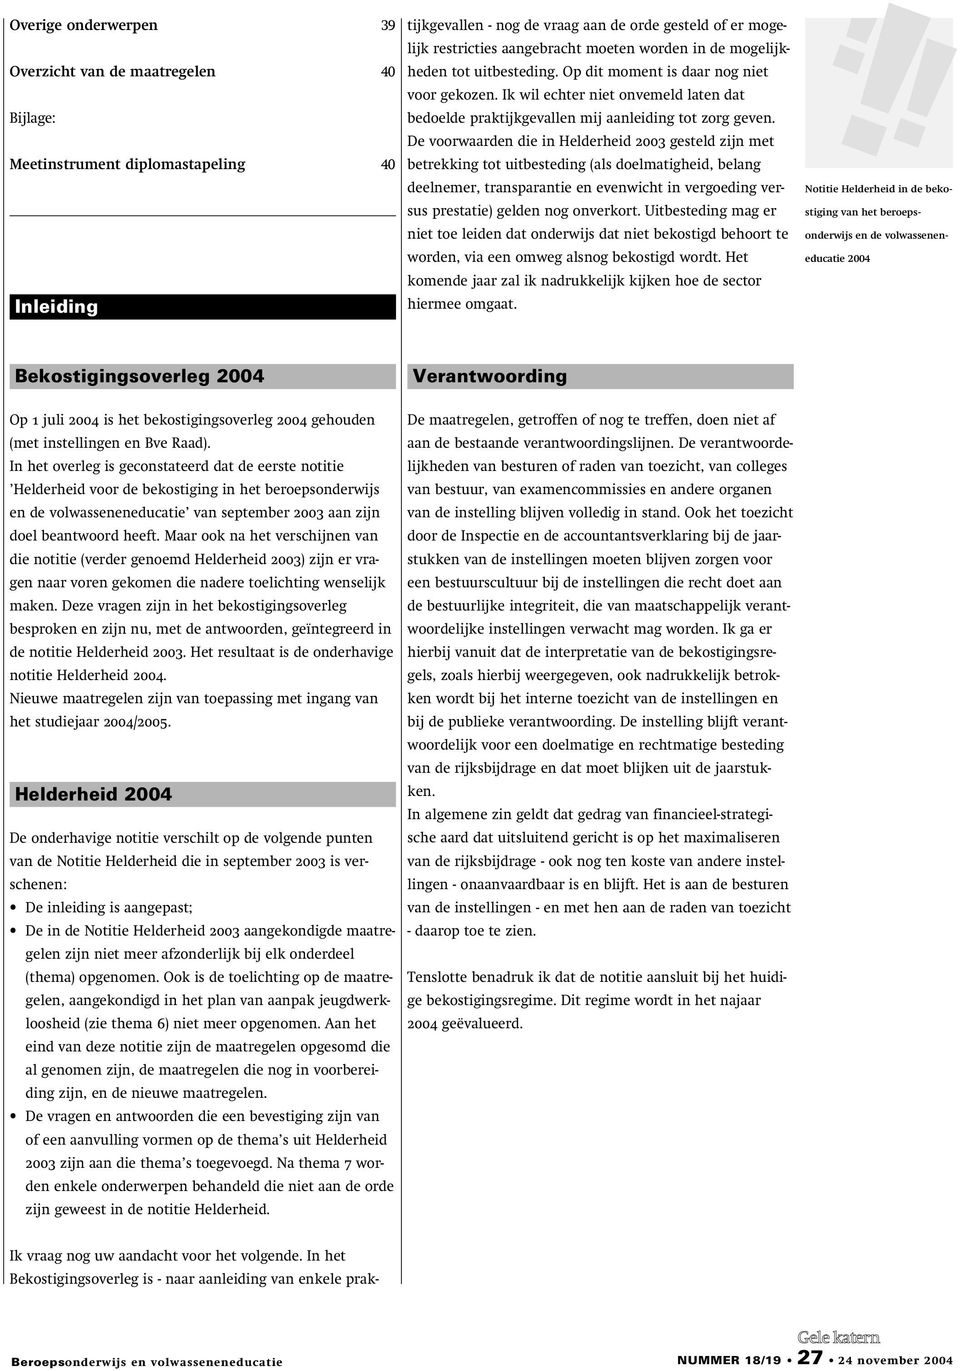 De voorwaarden die in Helderheid 2003 gesteld zijn met betrekking tot uitbesteding (als doelmatigheid, belang deelnemer, transparantie en evenwicht in vergoeding versus prestatie) gelden nog